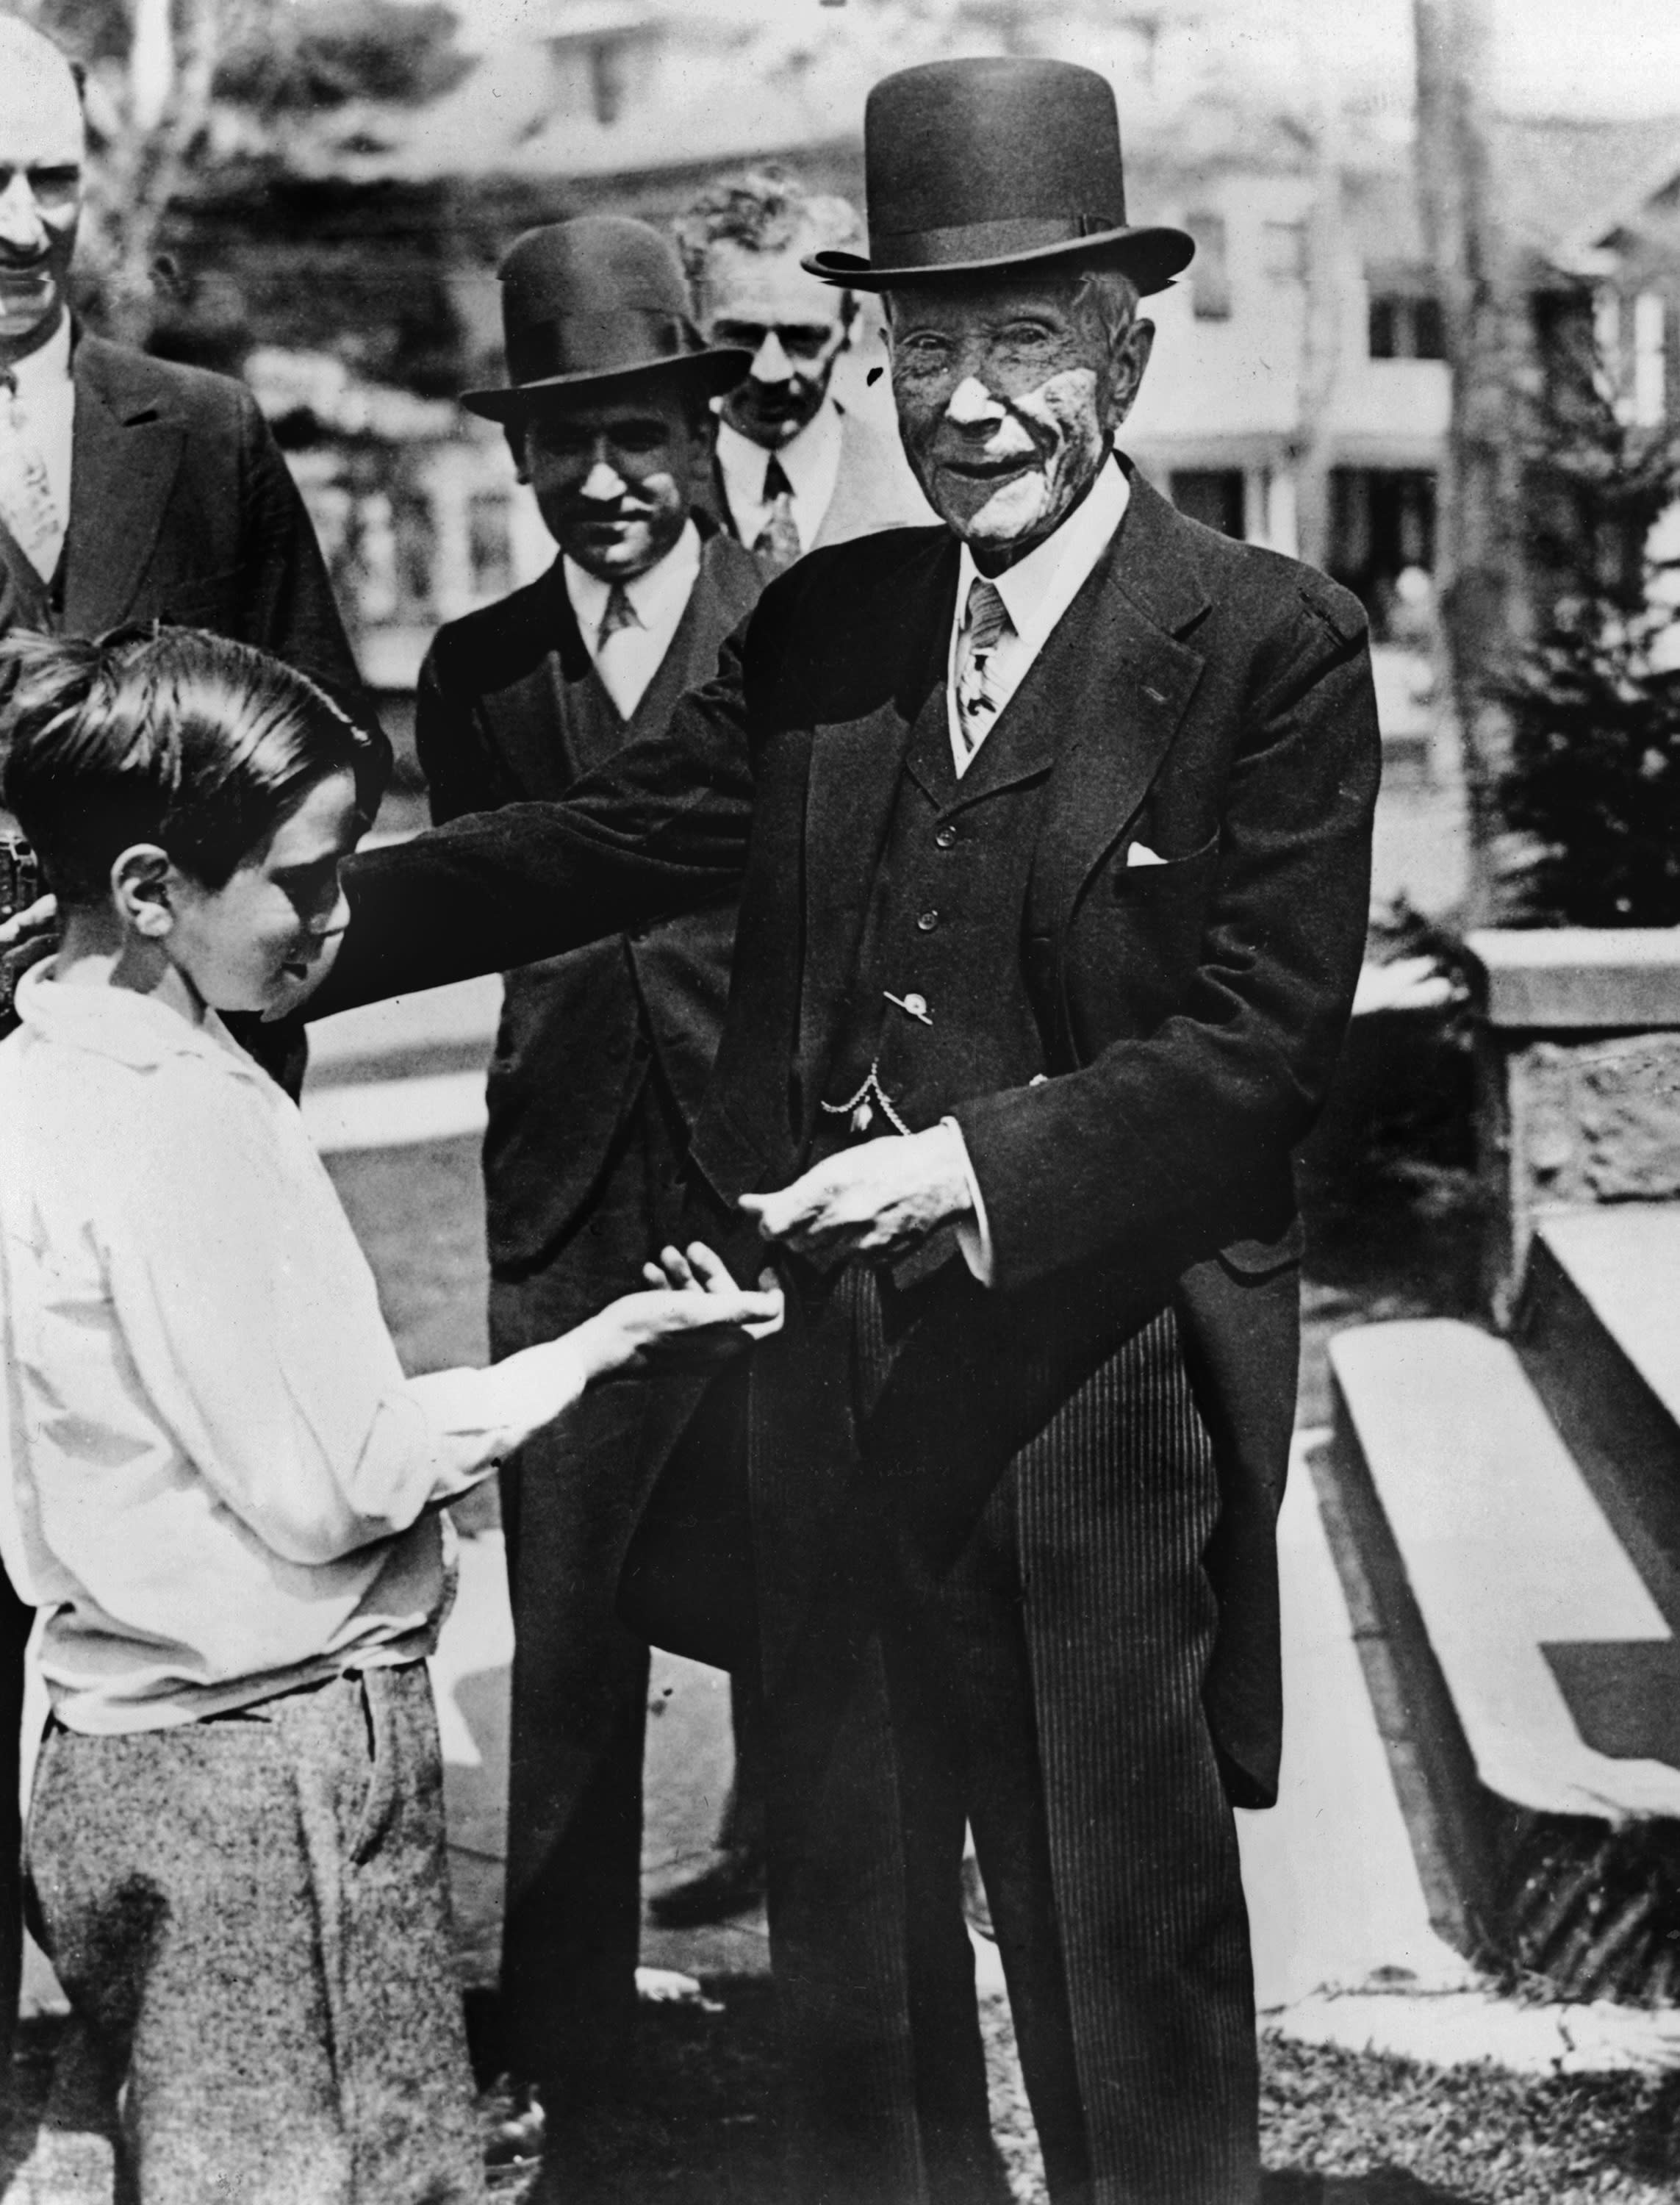 100 years on, Rockefeller Foundation still busy